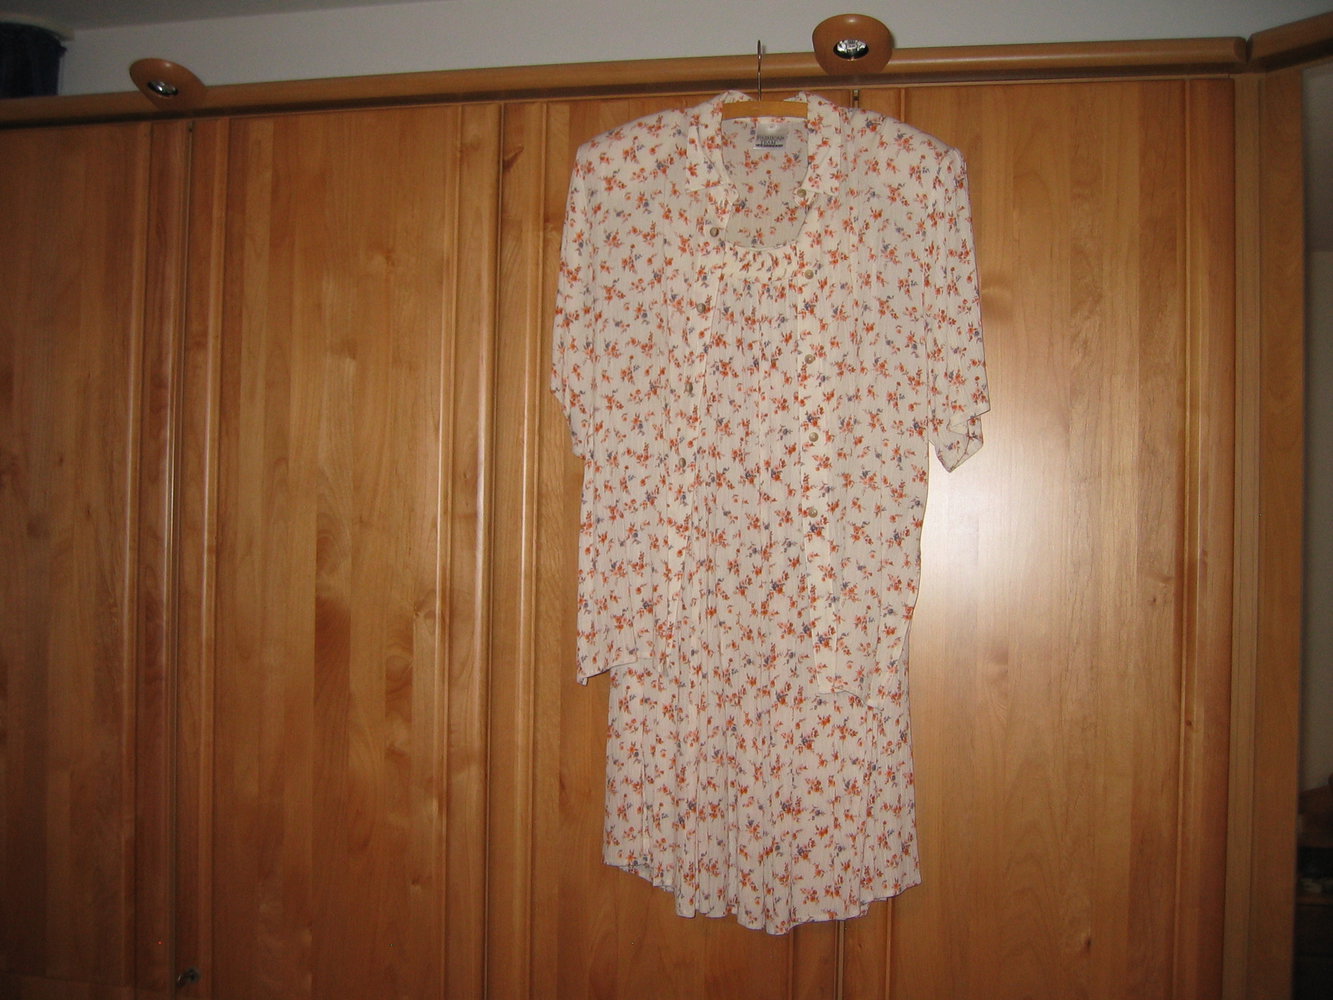 zweiteiliges Sommerkleid, Farbe natur mit kleinen Blümchen, Gr. M